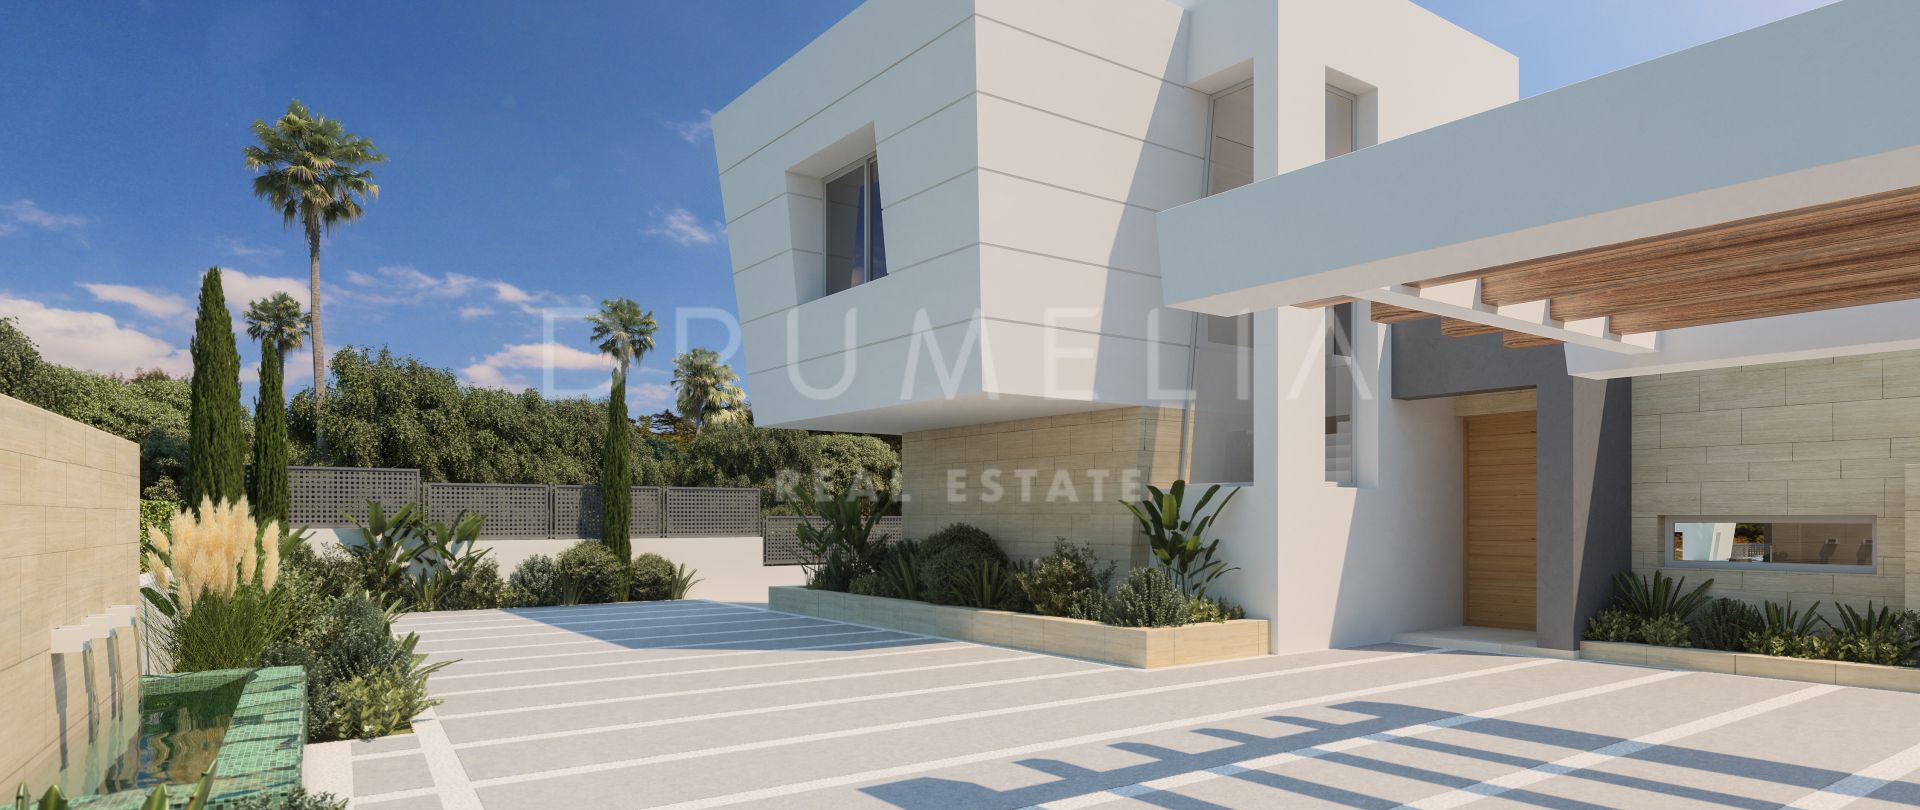 Schitterend perceel met project van moderne high-end villa in Rocio de Nagüeles, Marbella's Golden Mile.